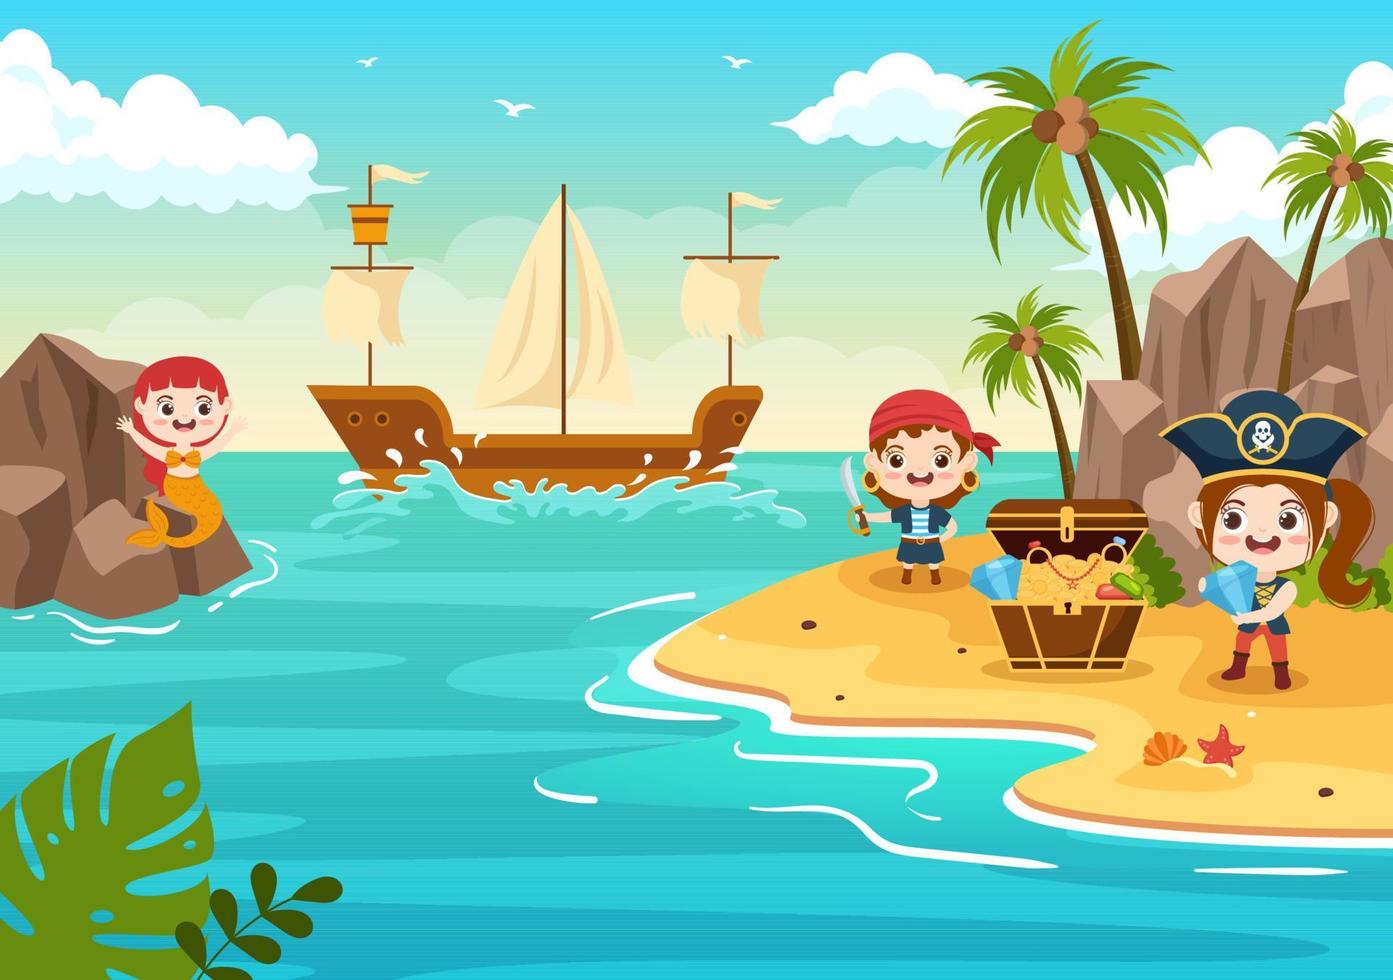 illustration de personnage de dessin animé mignon pirate avec roue en bois, coffre, caraïbes vintage, pirates et jolly roger sur un bateau en mer ou sur une île vecteur